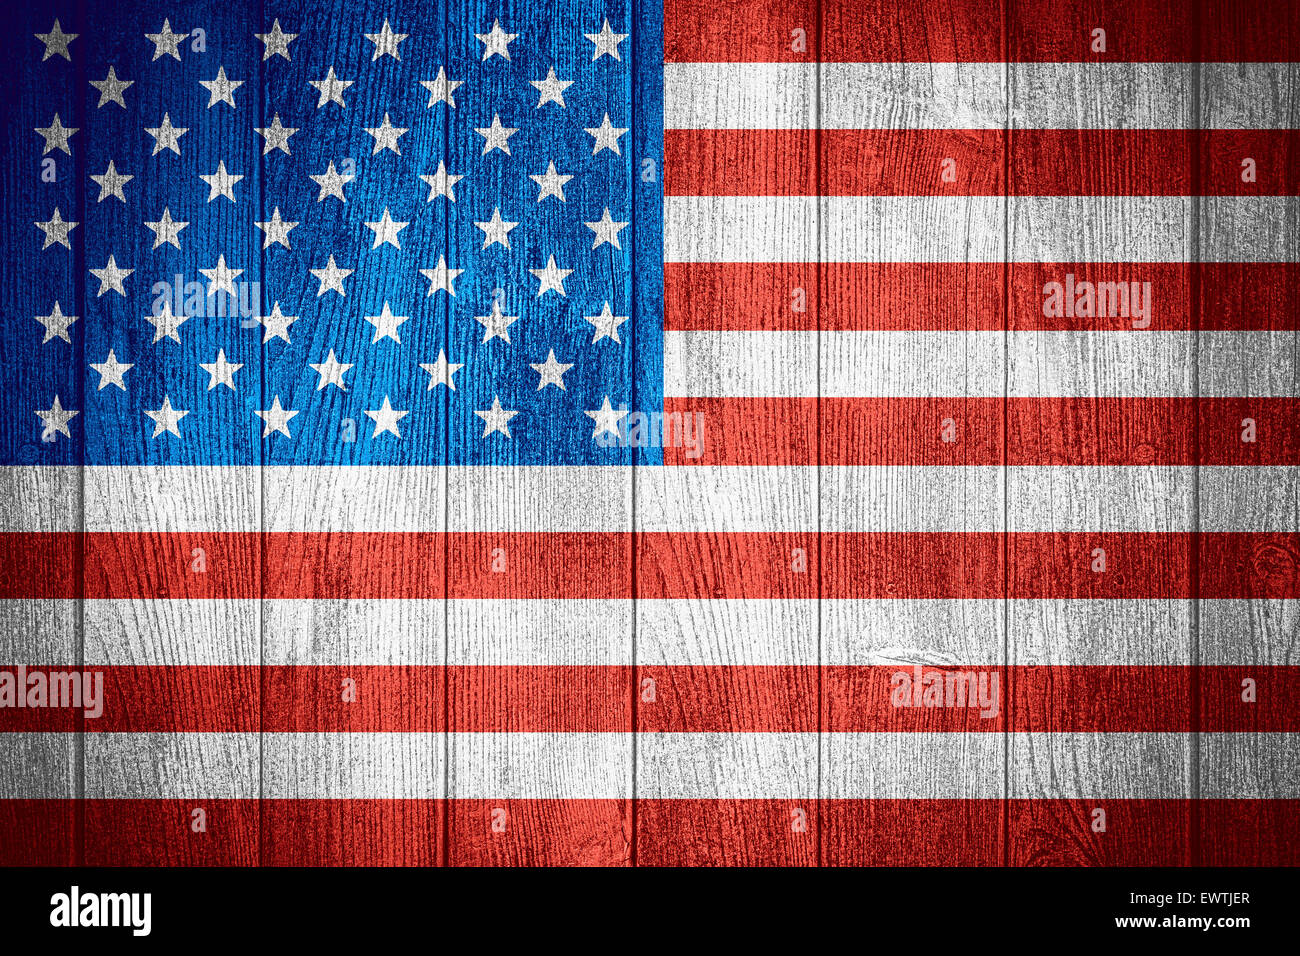 La bandera de Estados Unidos o la bandera americana de fondo sobre tablas de madera Foto de stock